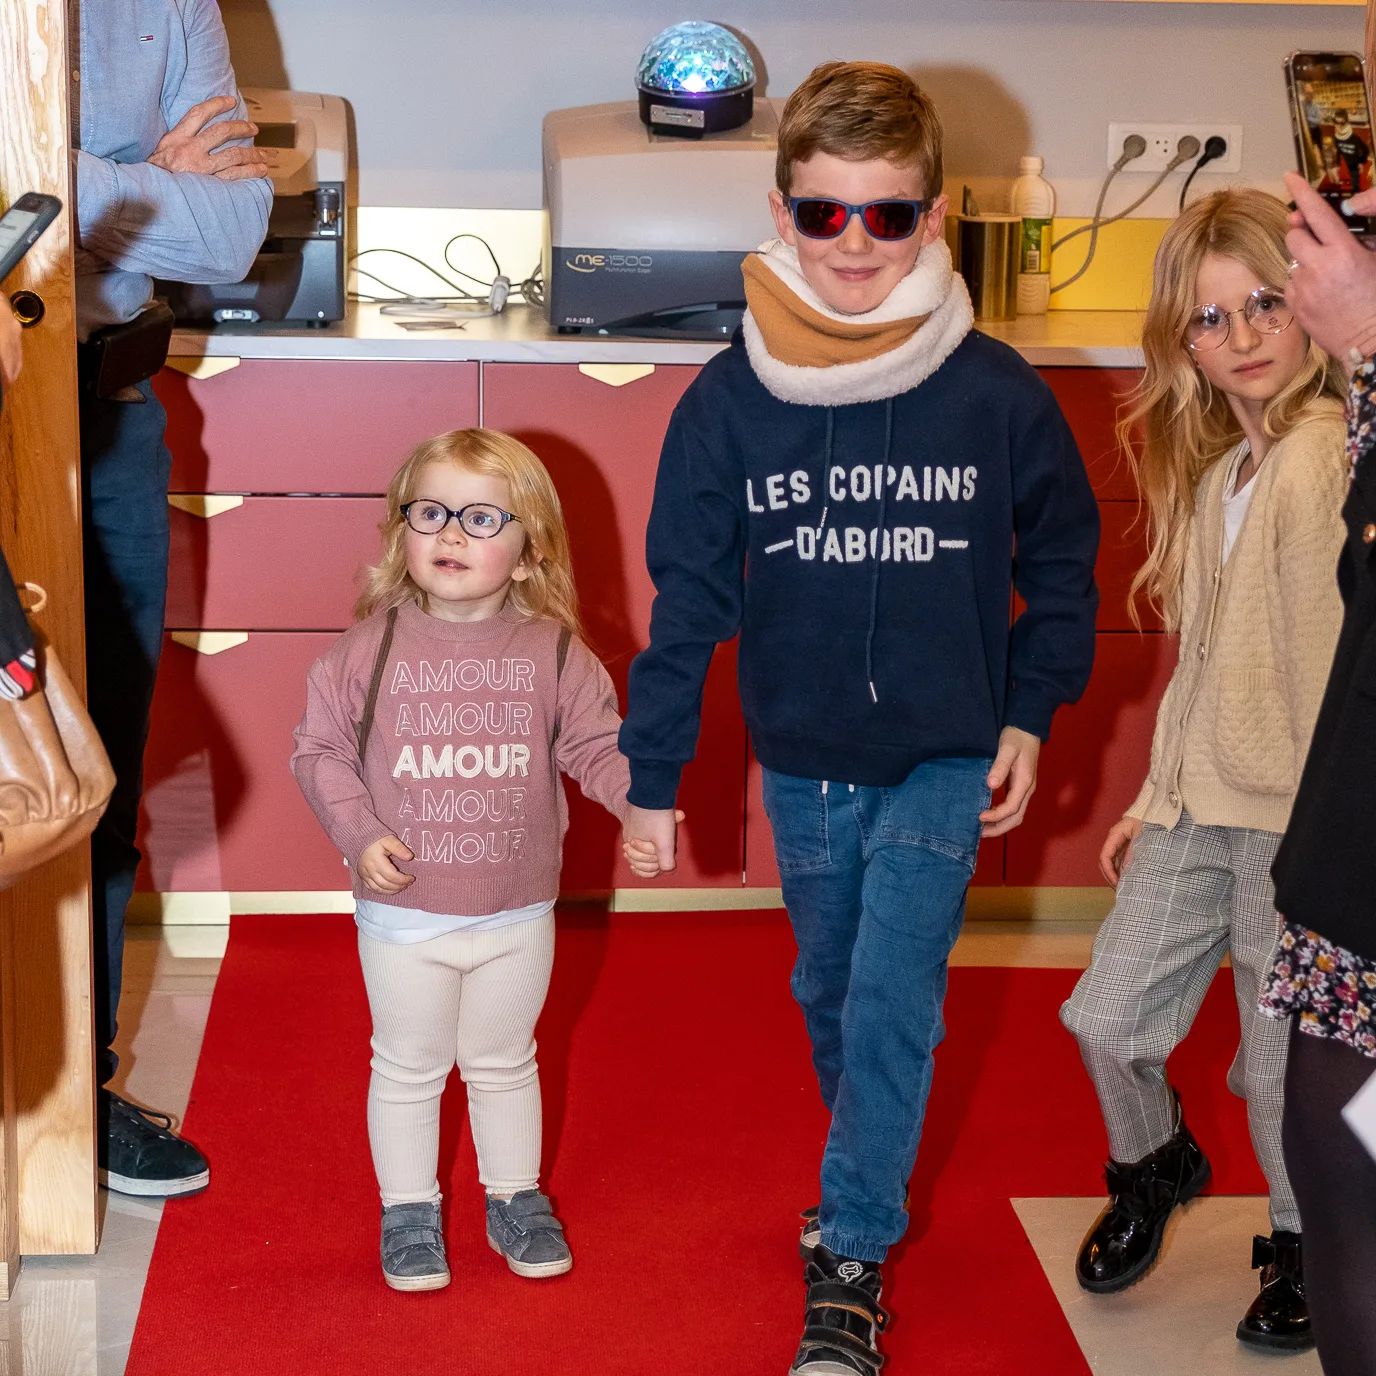 Ici lors du fashion show, les enfants défilent avec des tenues de chez @maisonninos @sarahrdvg.

Ophélie porte des lunettes @eyeleteyewear et Jules porte des lunettes de soleil @cebe_eyewear 

#lescopains #lescopainsdabord #amour#mode #défilé #fashion #fashionshow #amiens#protegezvosyeux #soleil #solaires #lunettes #opticien #ola #amiens #amiensmaville❤️

Photo by @franck.burjes